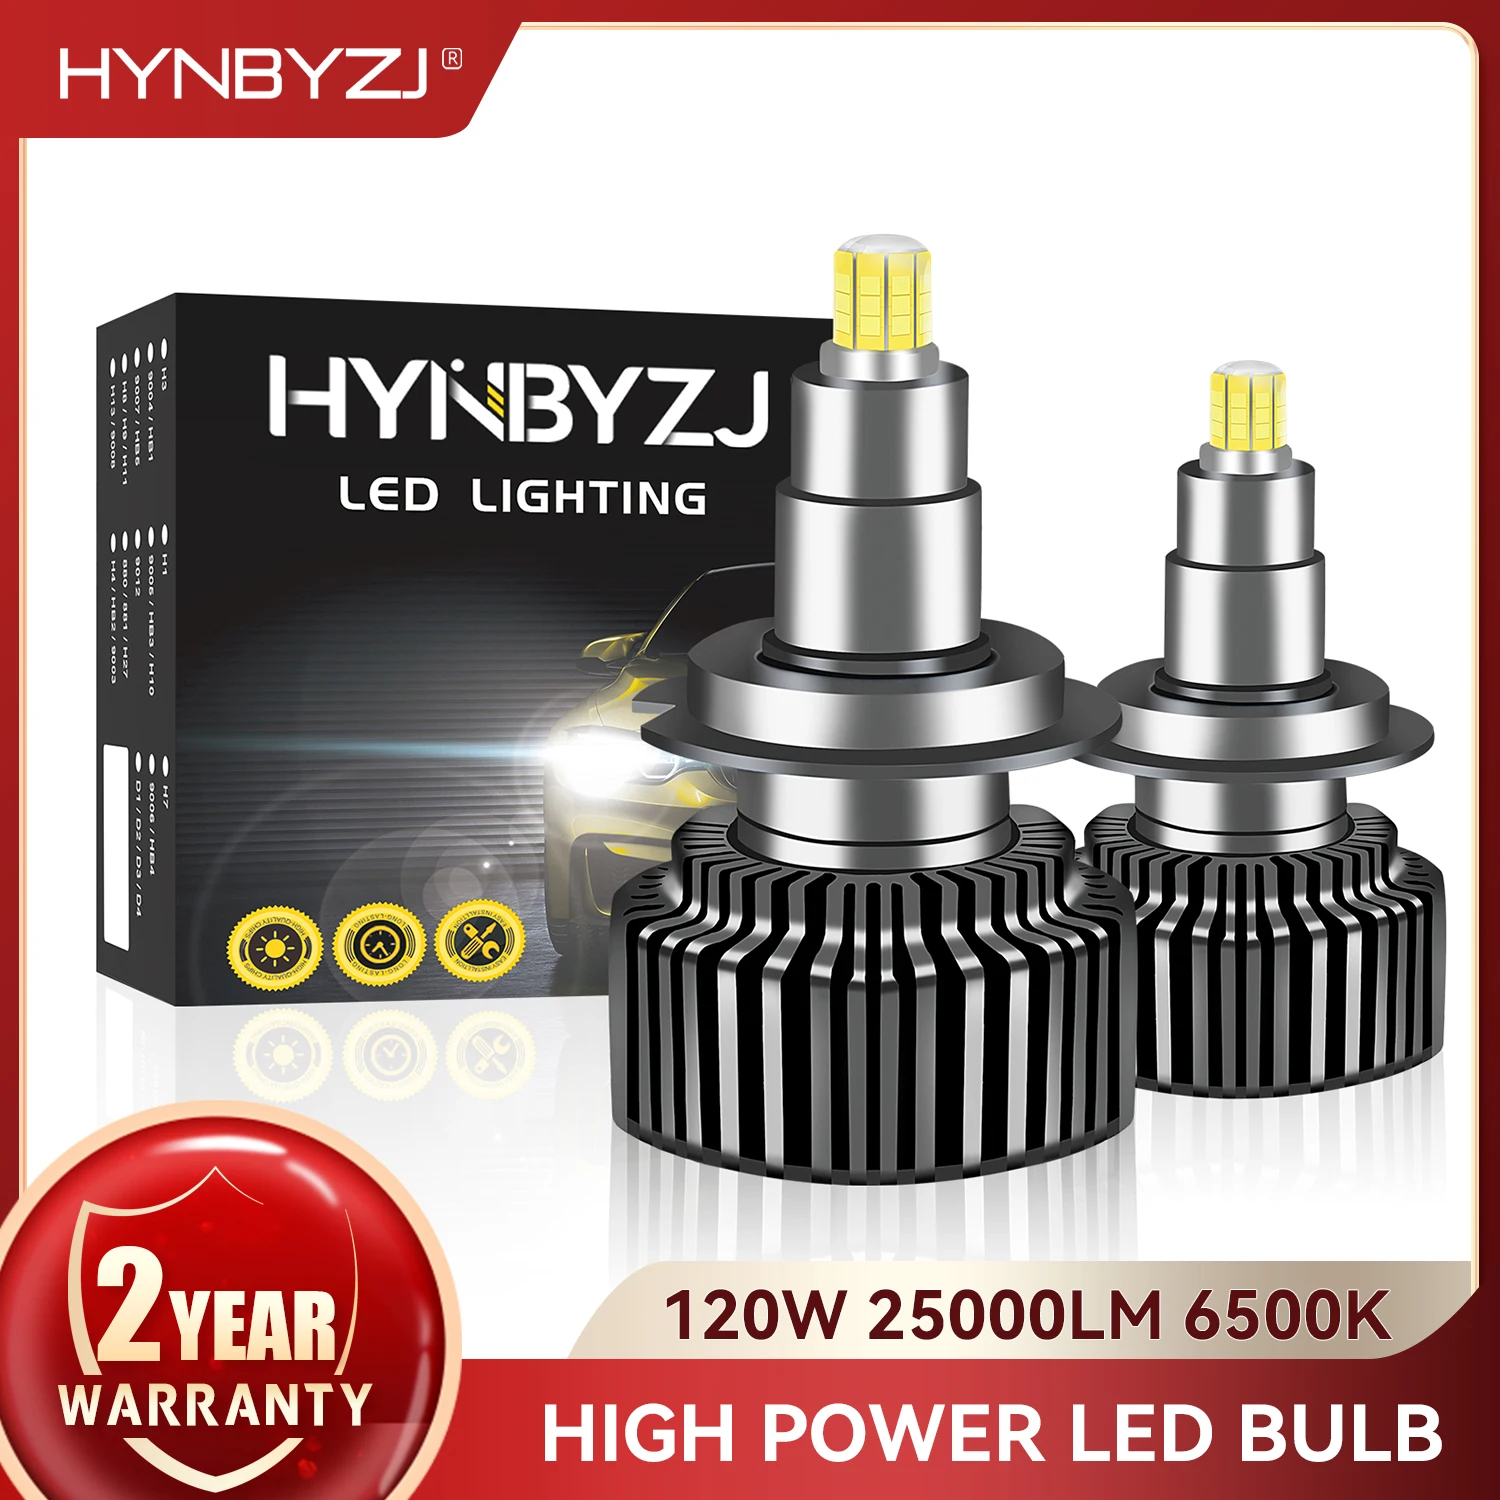 

HYNBYZJ H7 H1 Led Headlights 360 Turbo 25000Lm H4 H8 H9 H11 Auto Lamps Hb3 Hb4 Hir2 Car Bulbs 6500K 9005 9006 9012 Fog Lights